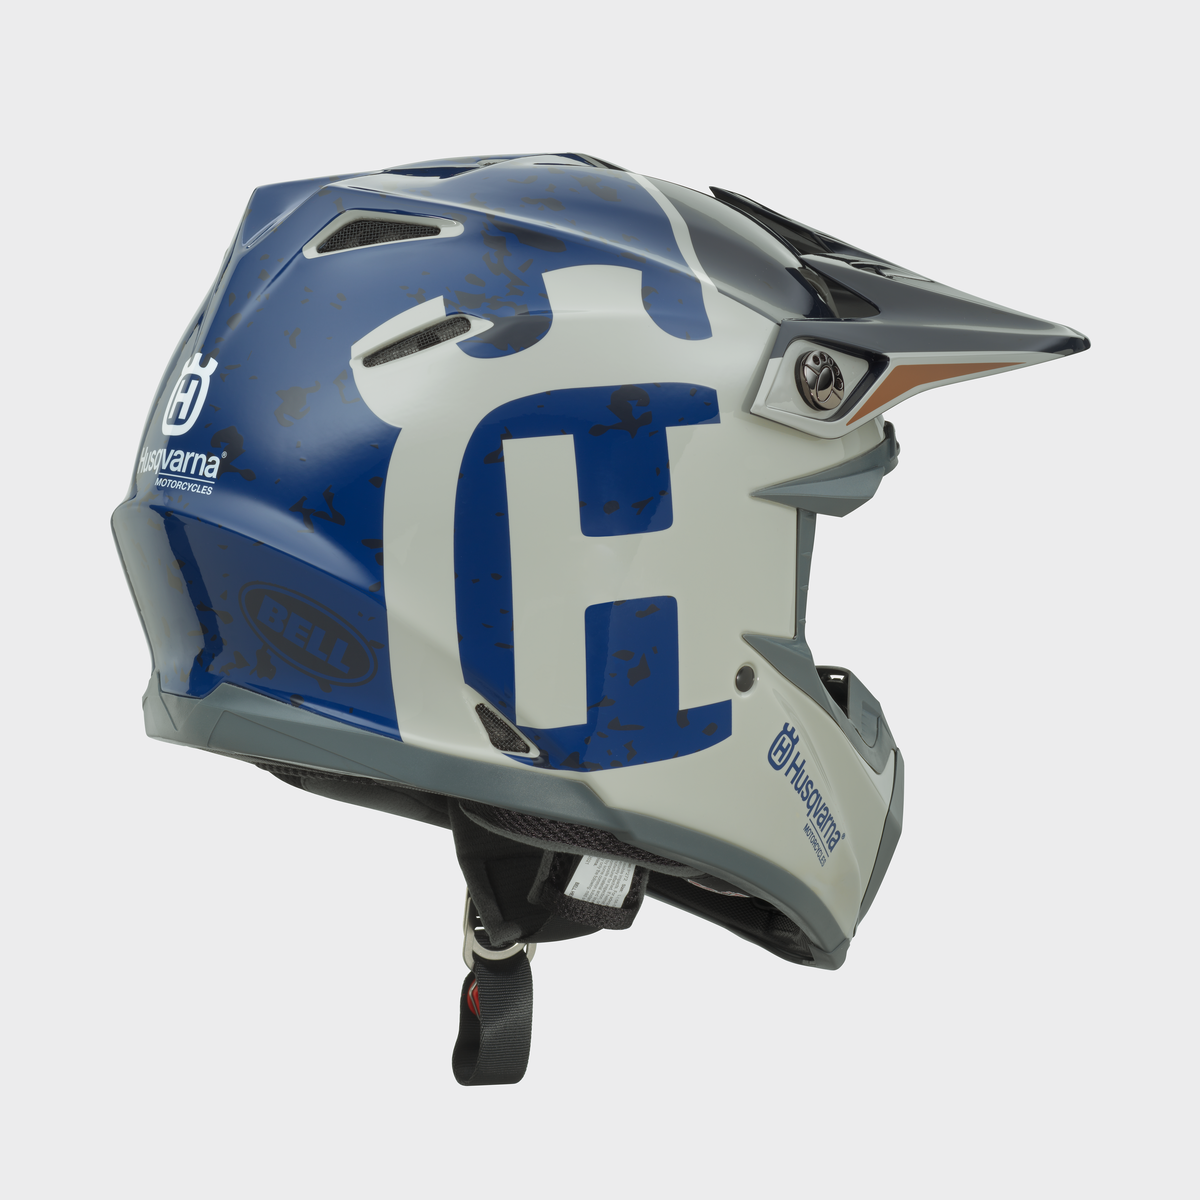 Husqvarna Bell Moto 9 MIPS Gotland Helmet